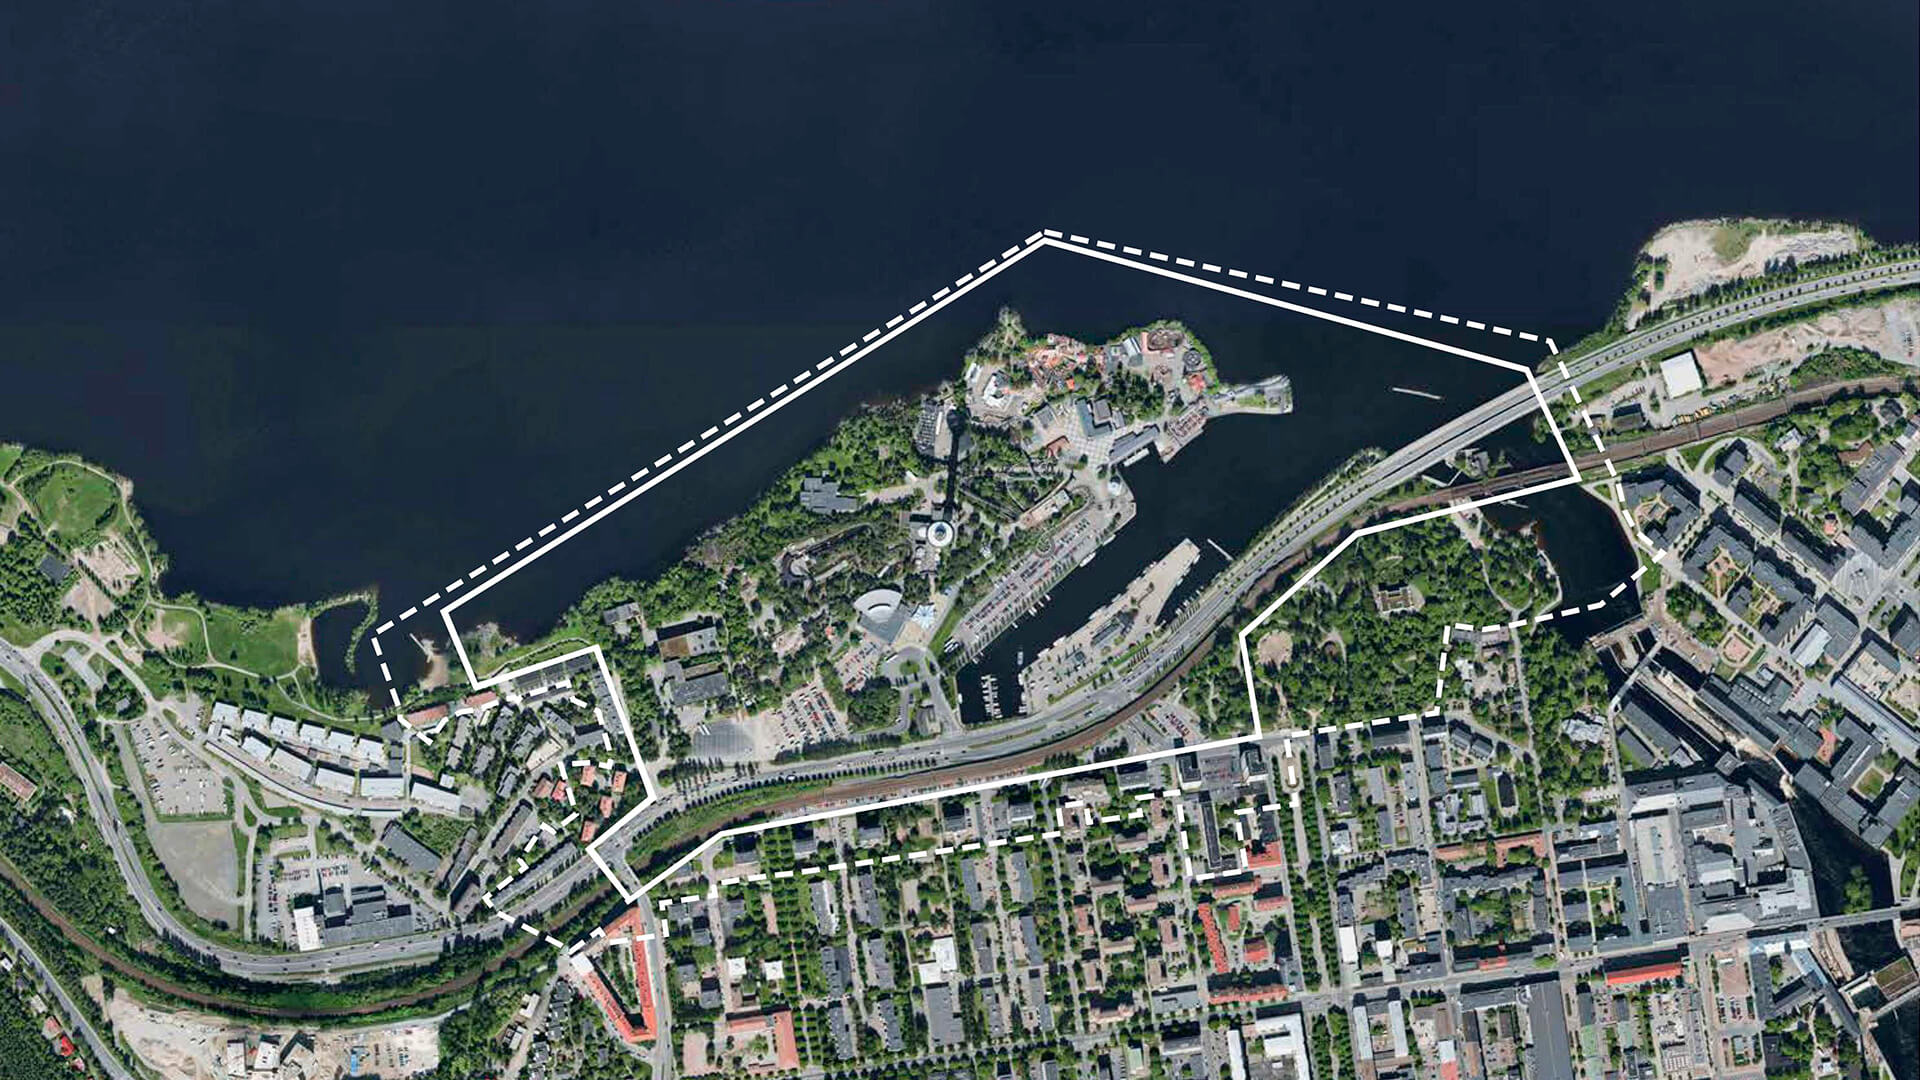 Särkänniemi city plan, Tampere